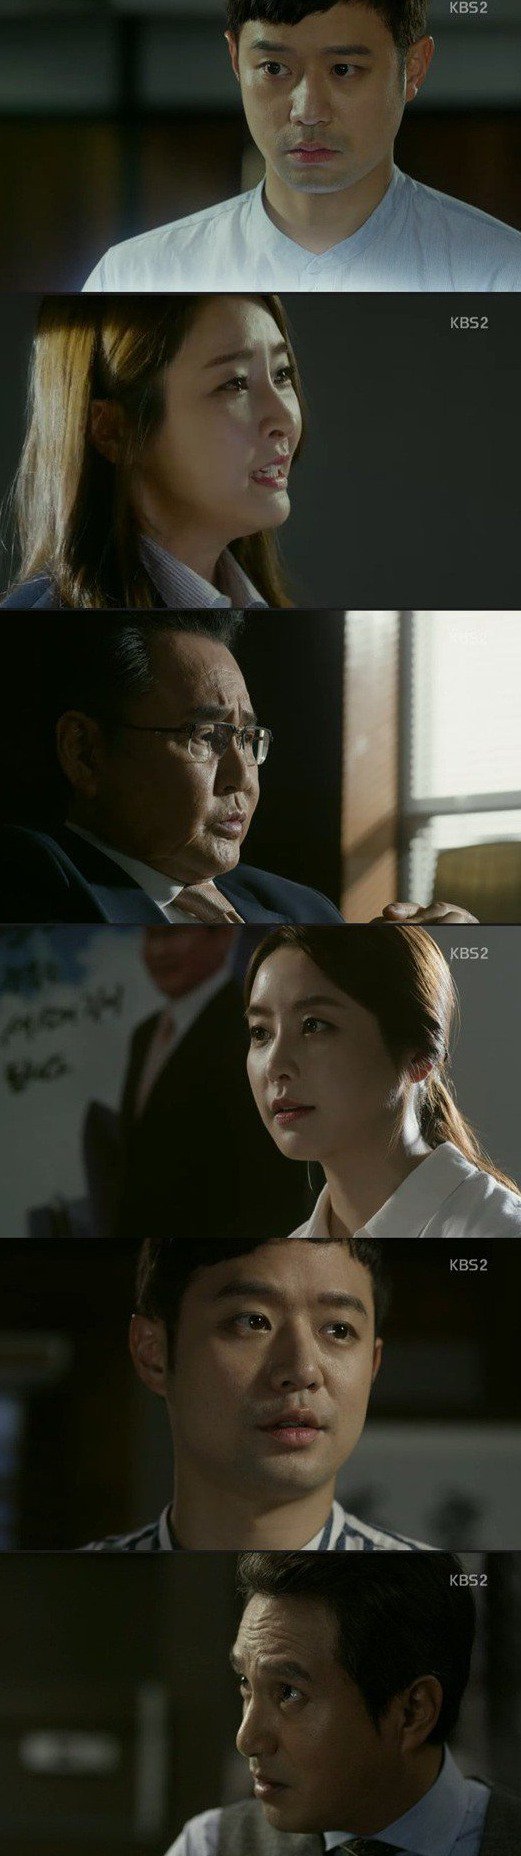 episode 15 captures for the Korean drama 'Master - God of Noodles'